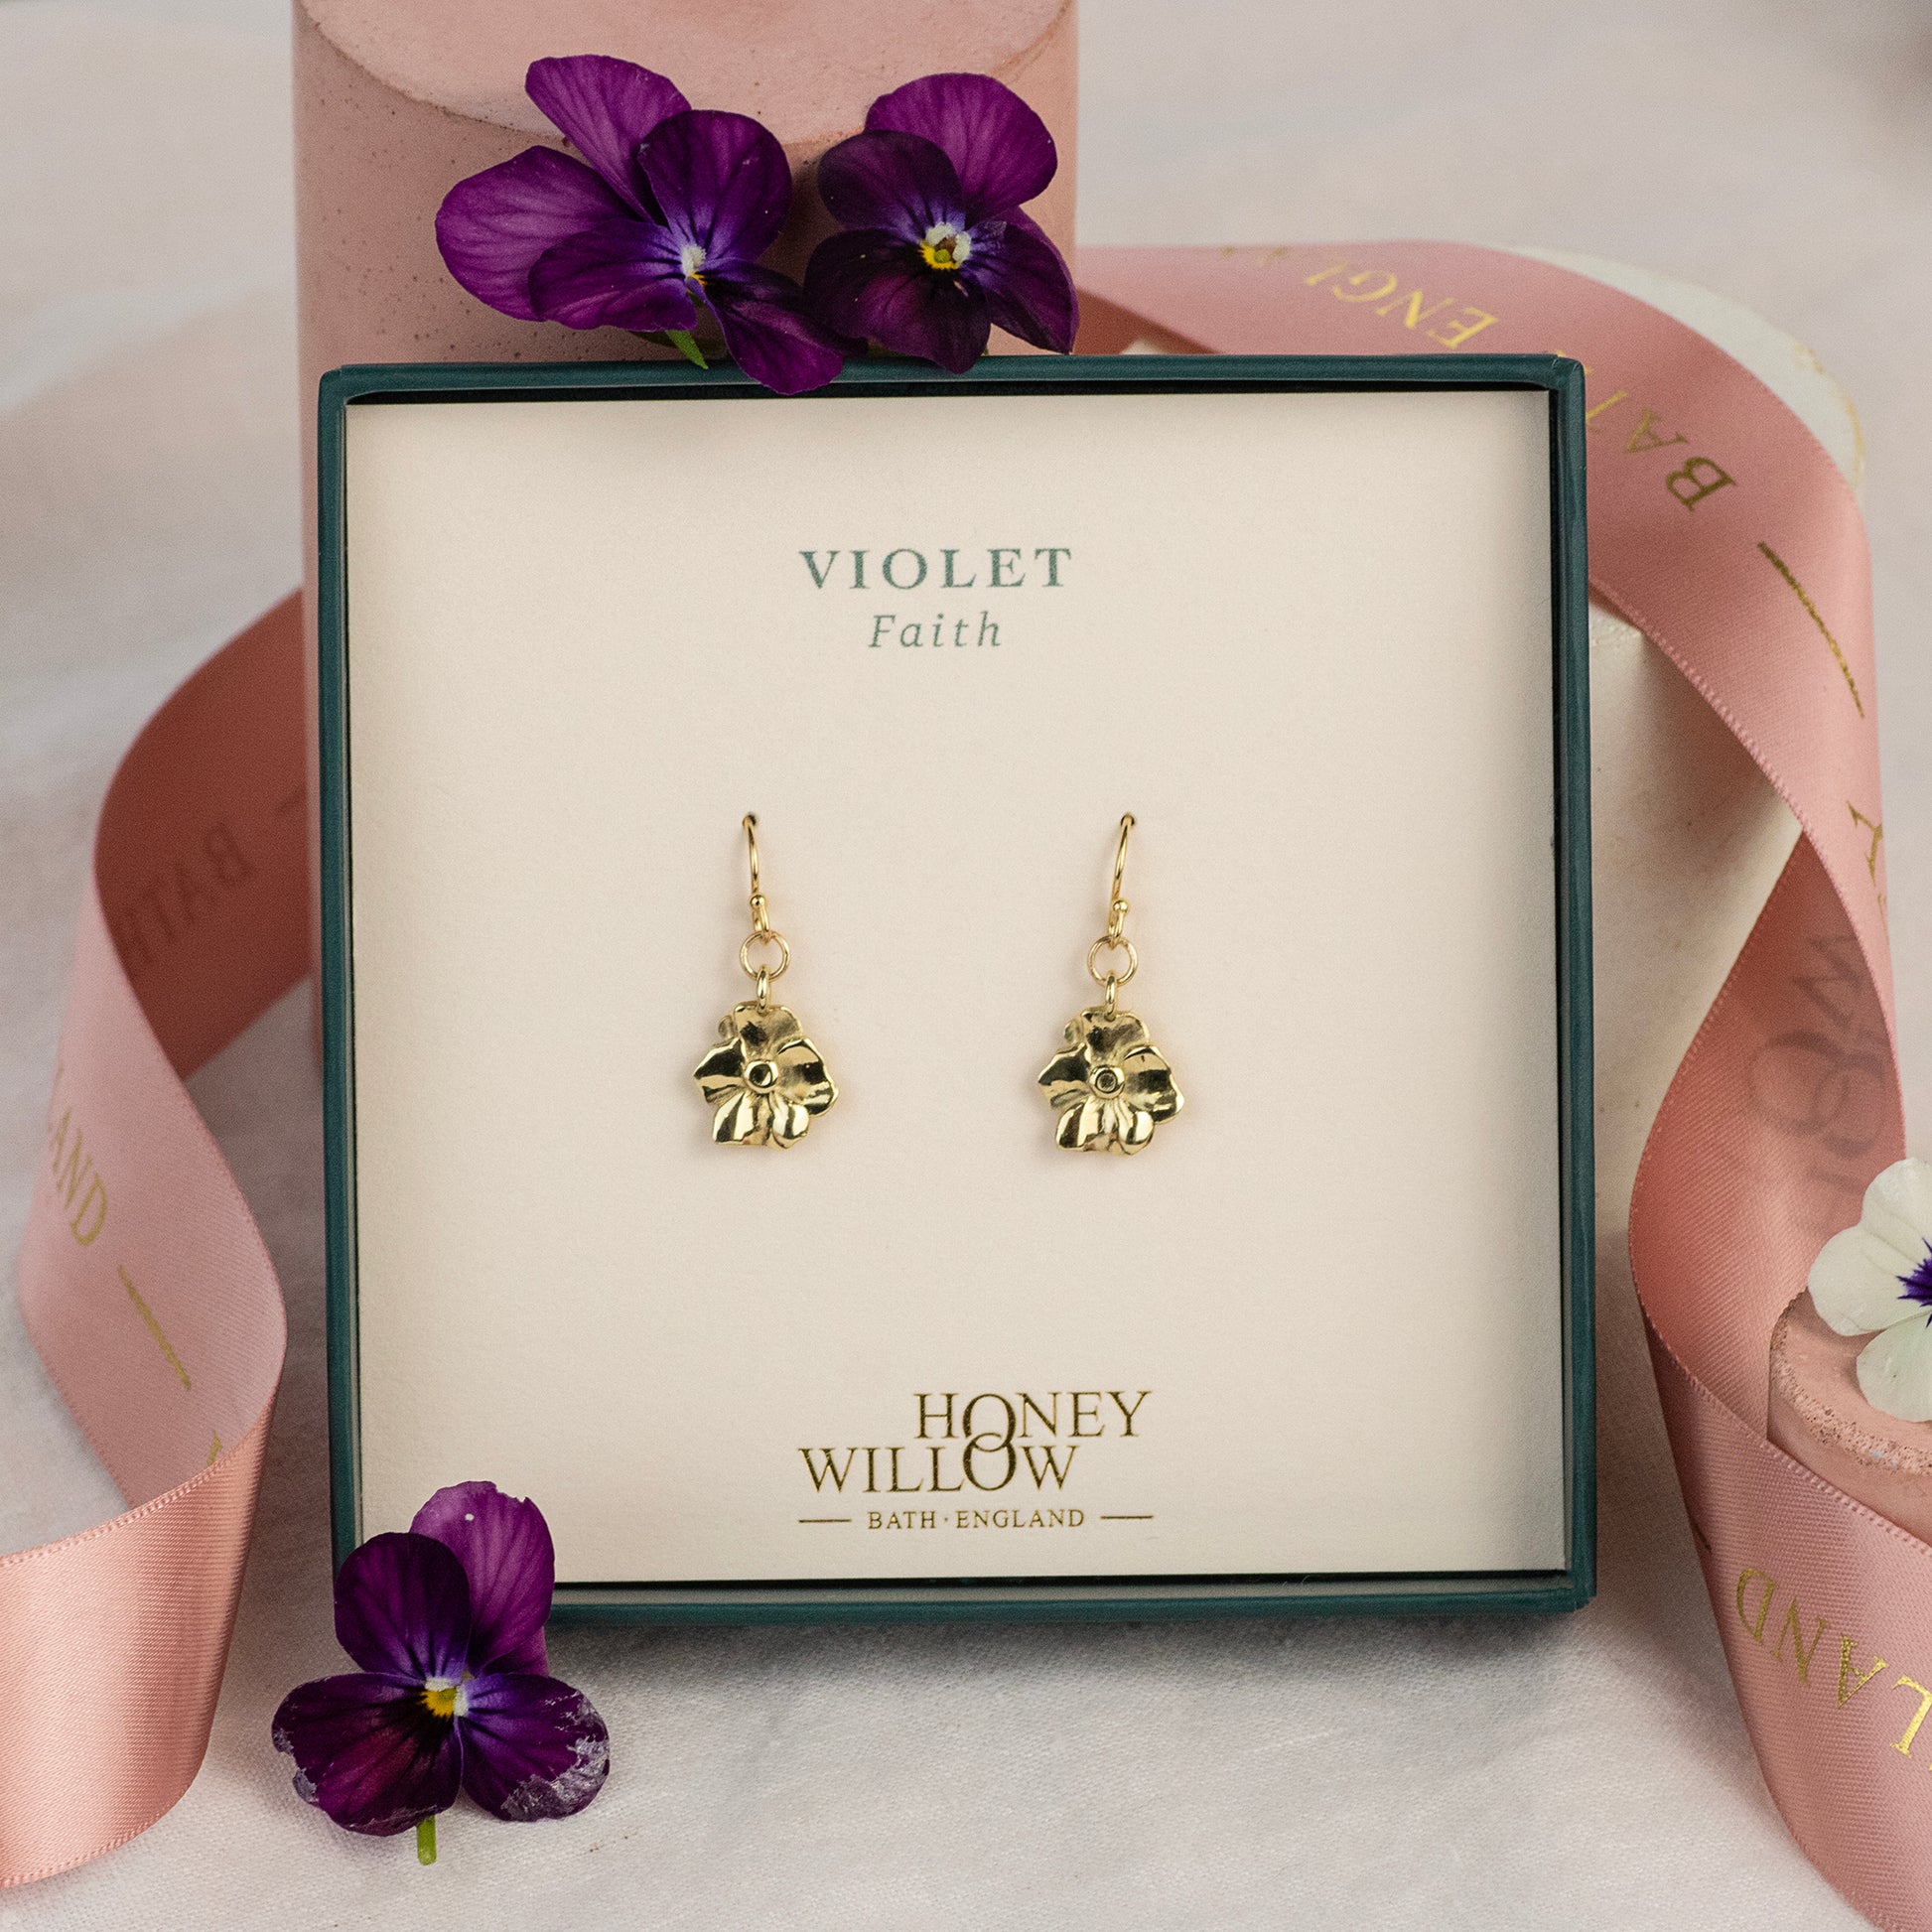 Violet Flower Earrings - Faith - 9kt Gold